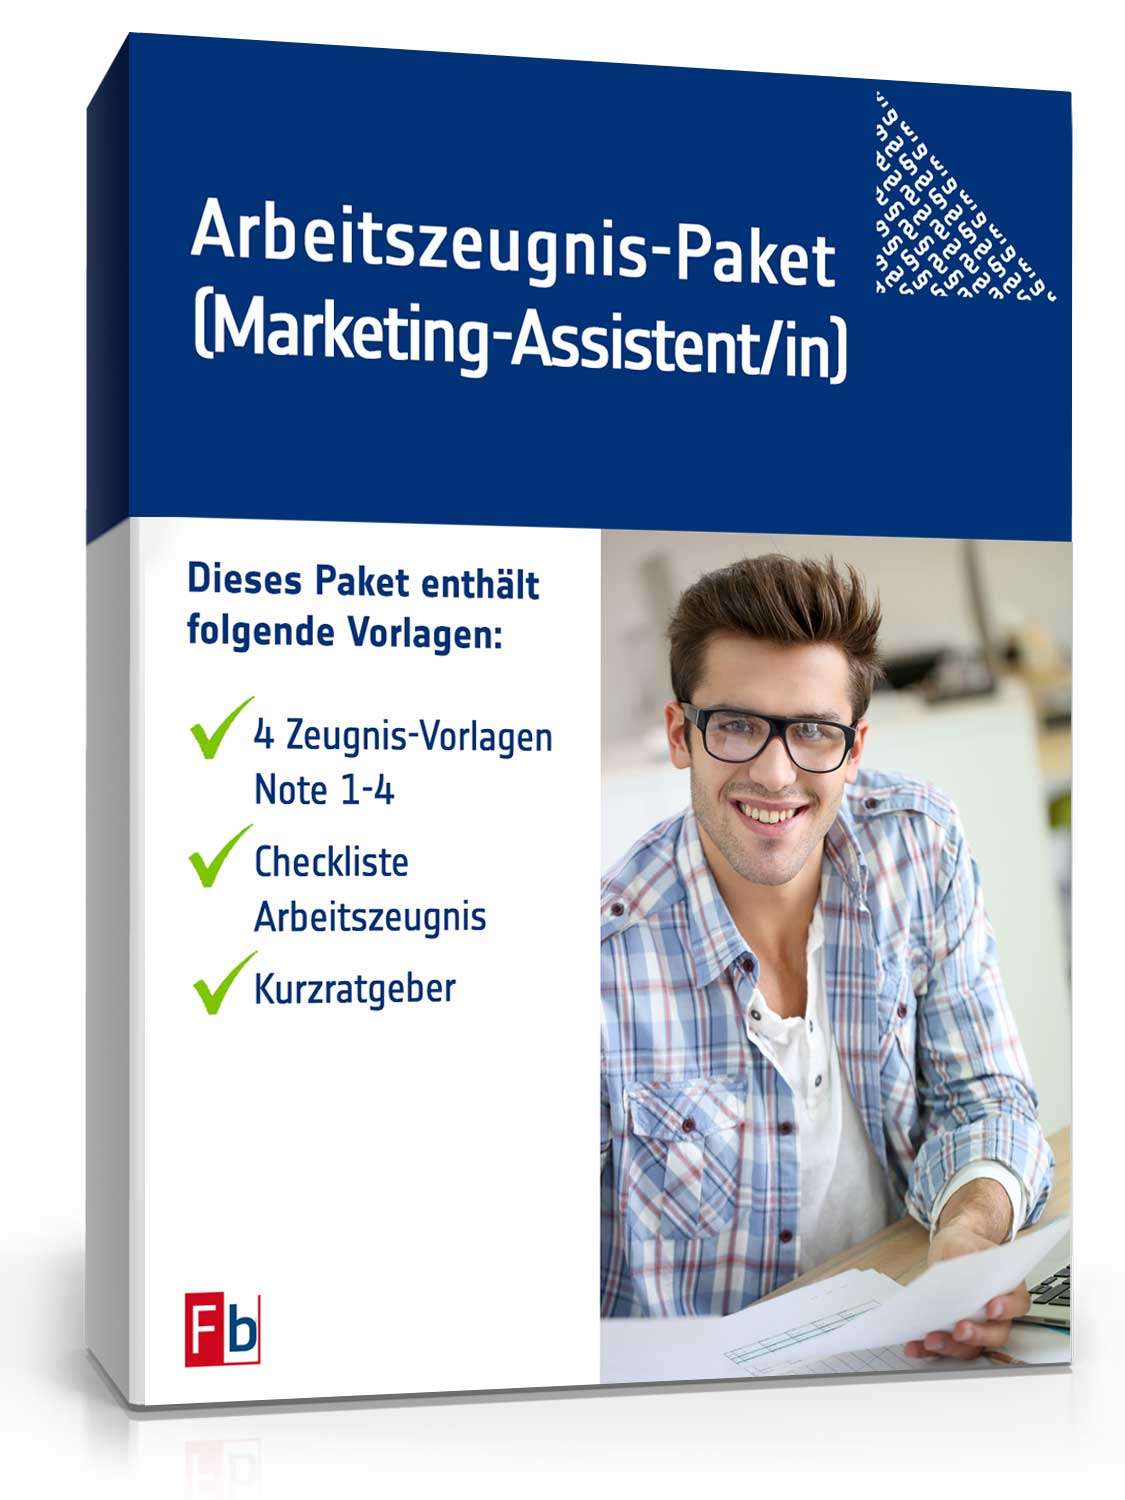 Hauptbild des Produkts: Arbeitszeugnis Marketing-Assistent